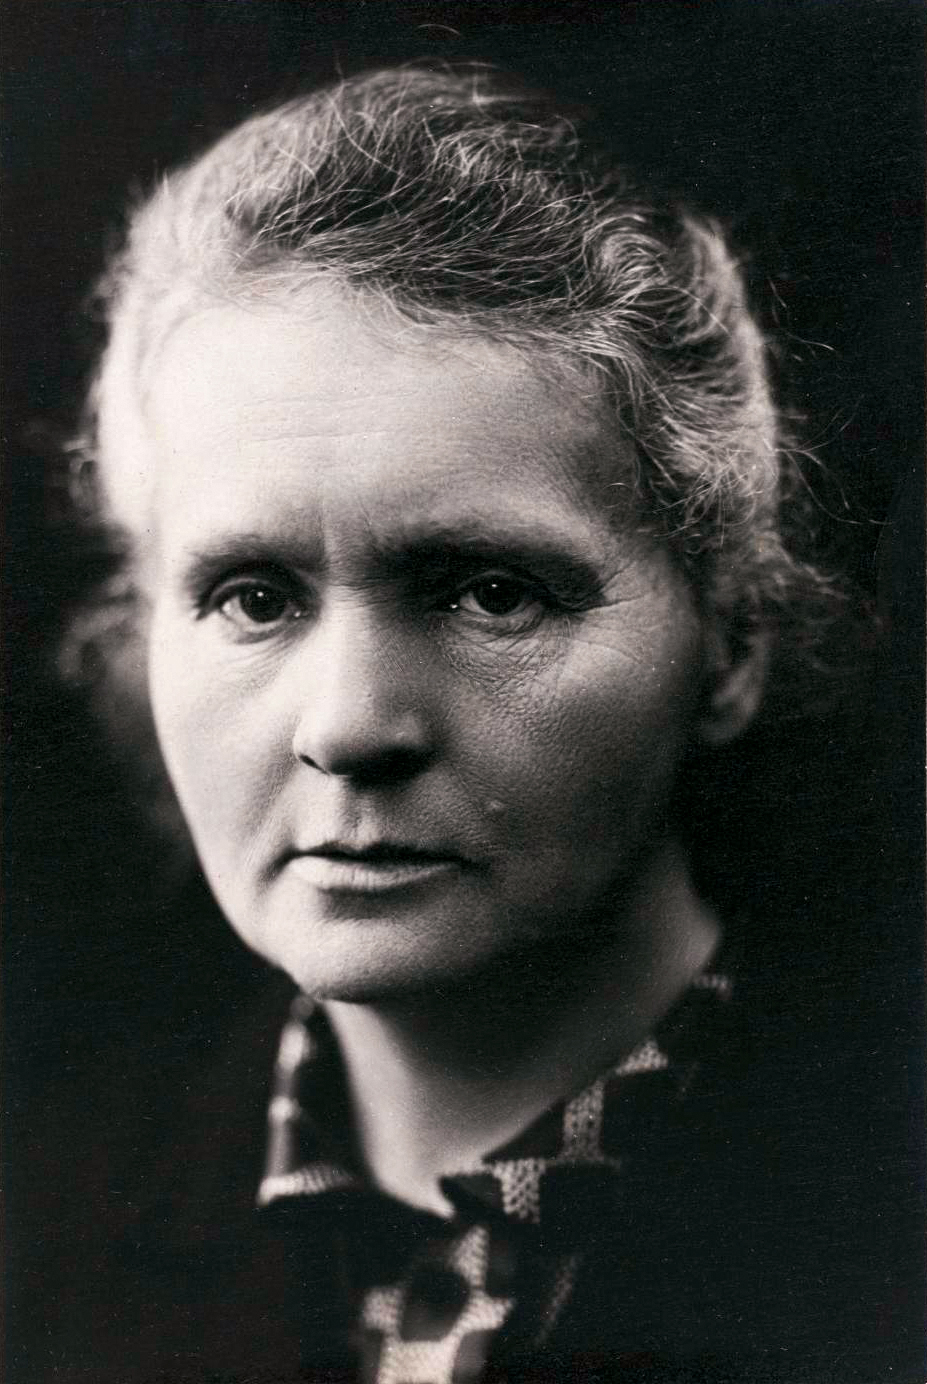 Marie Skłodowska Curie (1867.-1934.) bila je poljsko-francuska kemičarka koja je obilježila znanost svojim istraživanjem radioaktivnosti. Prva je žena koja je osvojila Nobelovu nagradu, a i prva osoba koja je tu nagradu osvojila dva puta za dva različita polja znanosti, za fiziku, koju je dijelila sa suprugom, i kemiju. U njena broja postignuća ubrajamo i profesorsku poziciju na Sveučilištu u Parizu, na kojoj je također bila prva žena. 